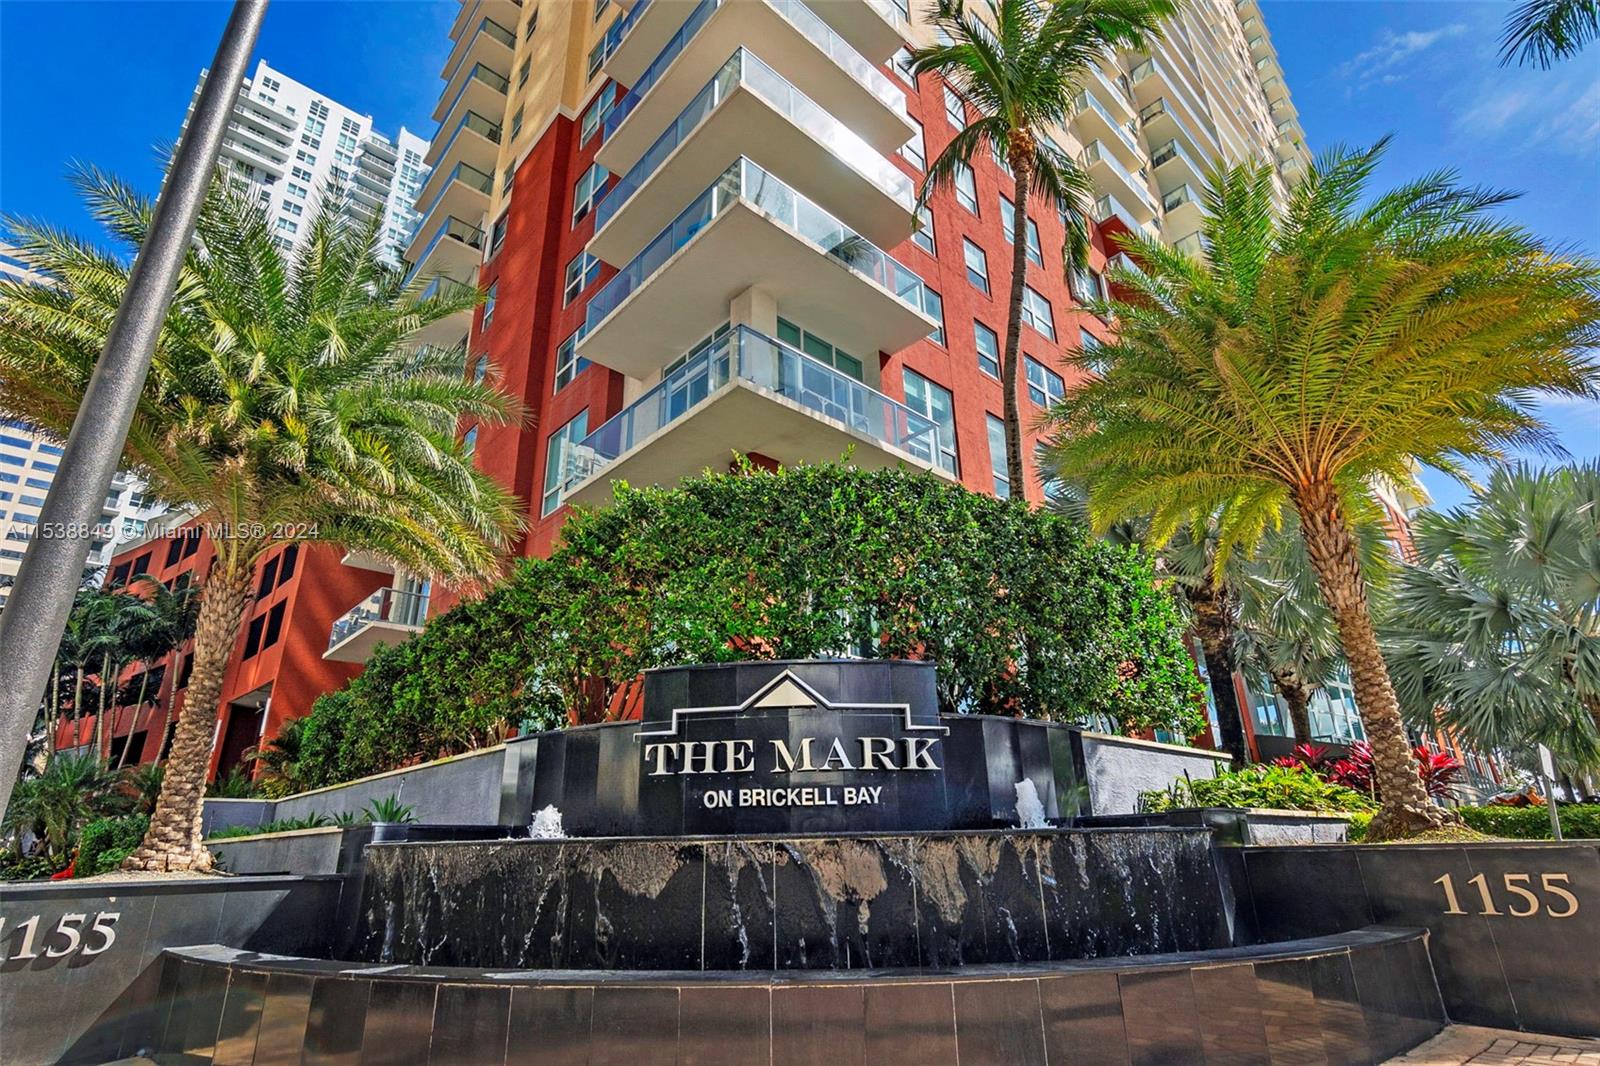 Condo for Rent in Miami, FL